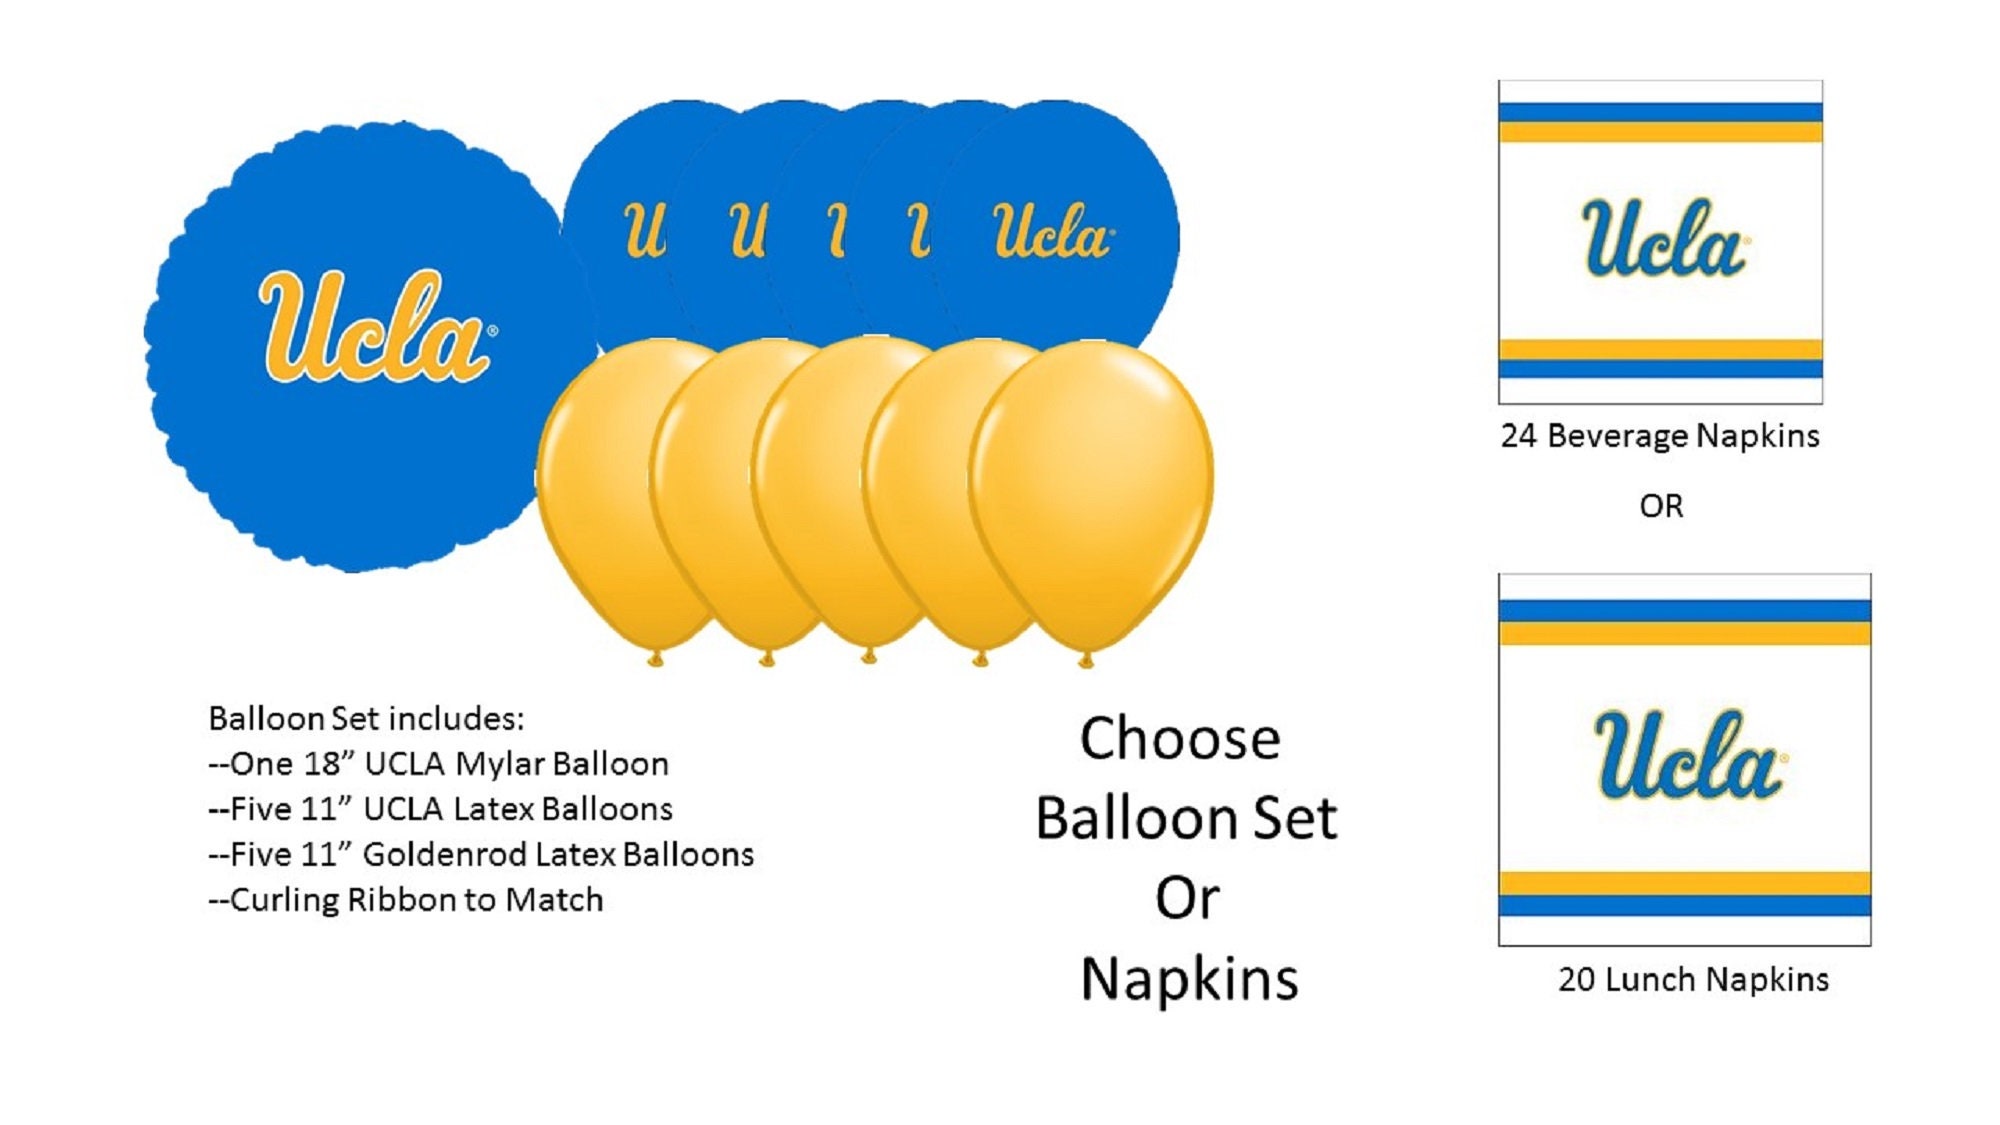 UCLA Bruins Balloon  Ucla bruins, Ucla, Bruins